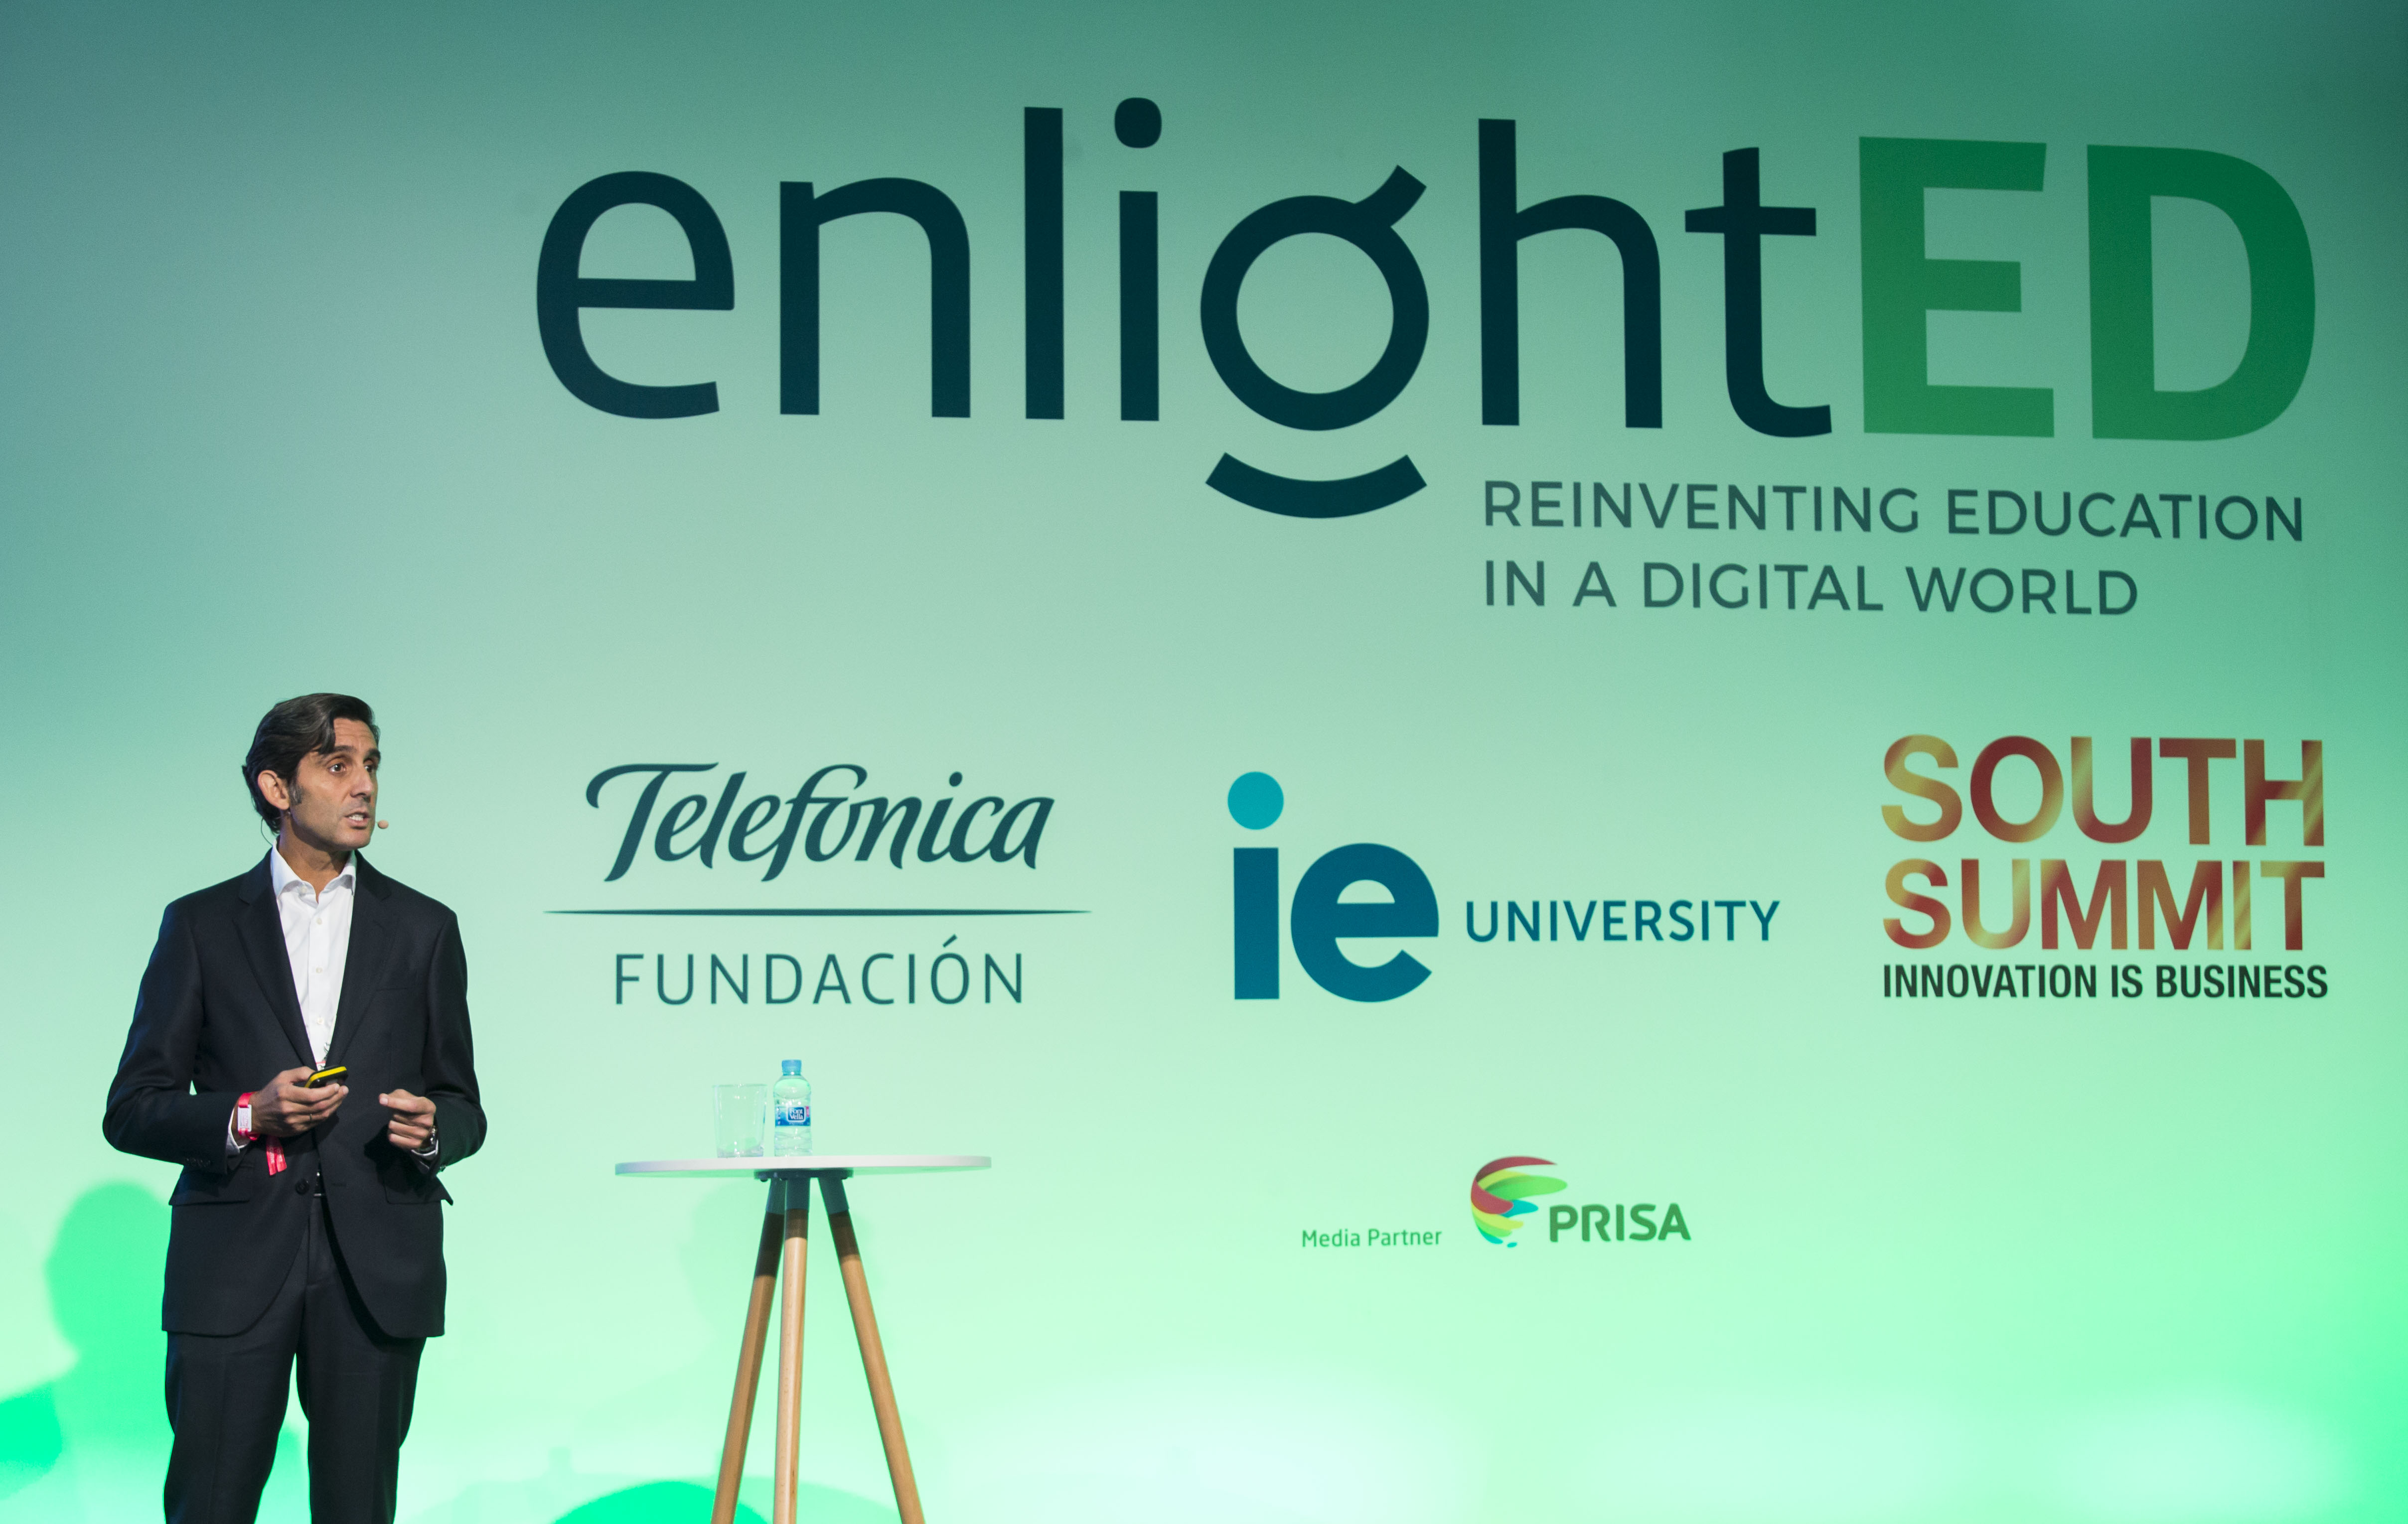 El presidente de Telefónica ha inaugurado hoy “enlightED”, en el marco de South Summit 2018